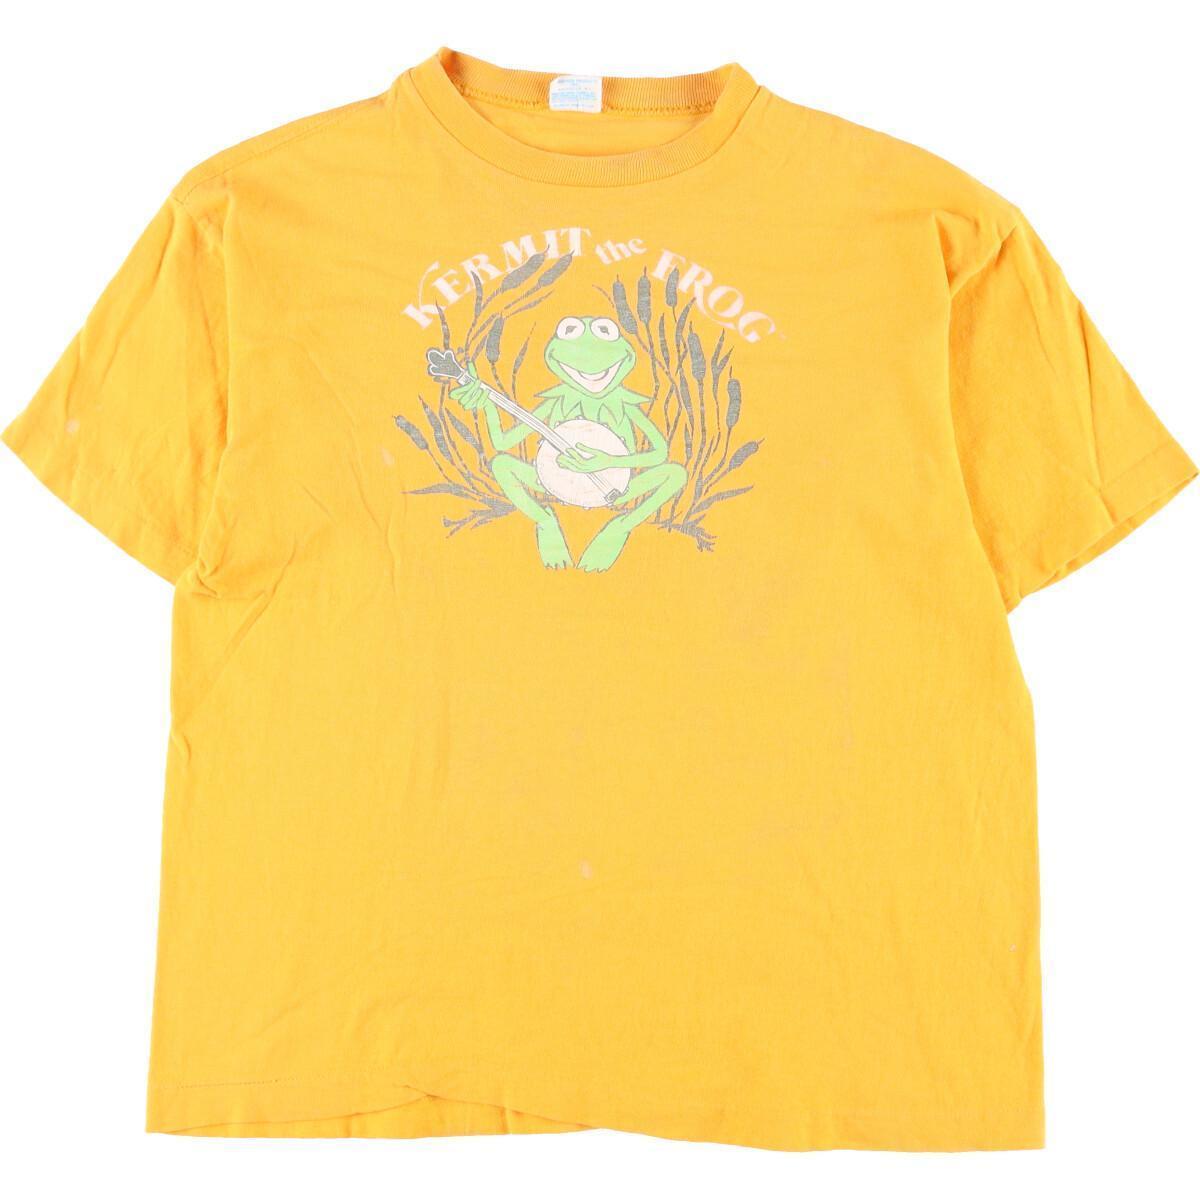 小物などお買い得な福袋 Kermit バータグ Champion チャンピオン 70年代 古着 カーミット /evb001108 ヴィンテージ メンズS USA製 キャラクタープリントTシャツ イラスト、キャラクター